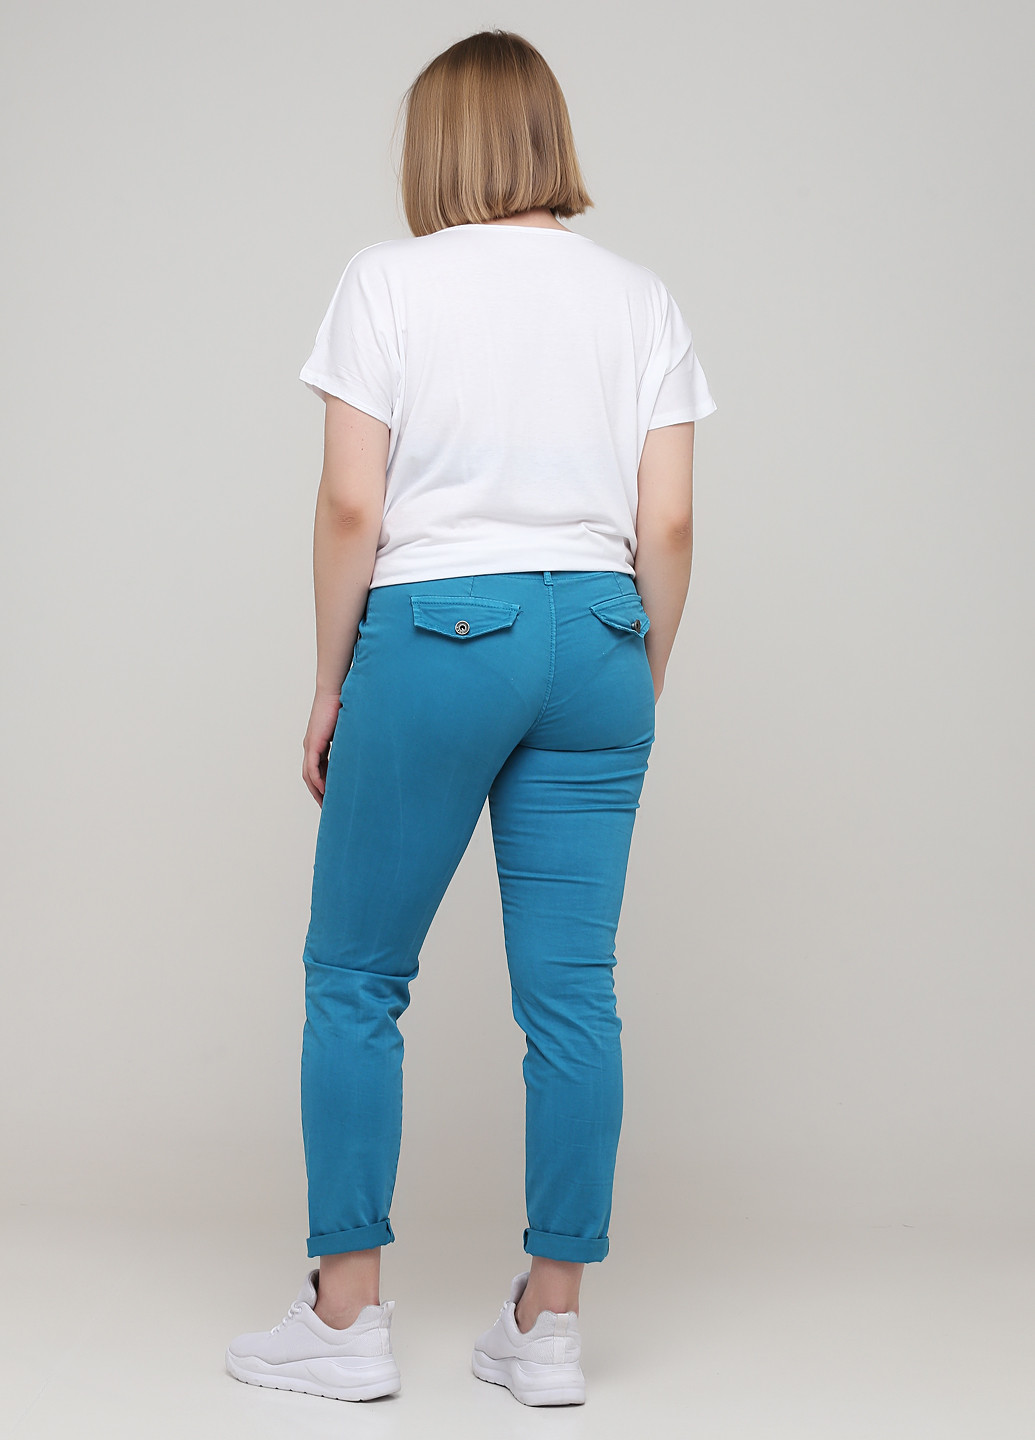 Бирюзовые джинсовые демисезонные укороченные, чиносы брюки Made in Italy